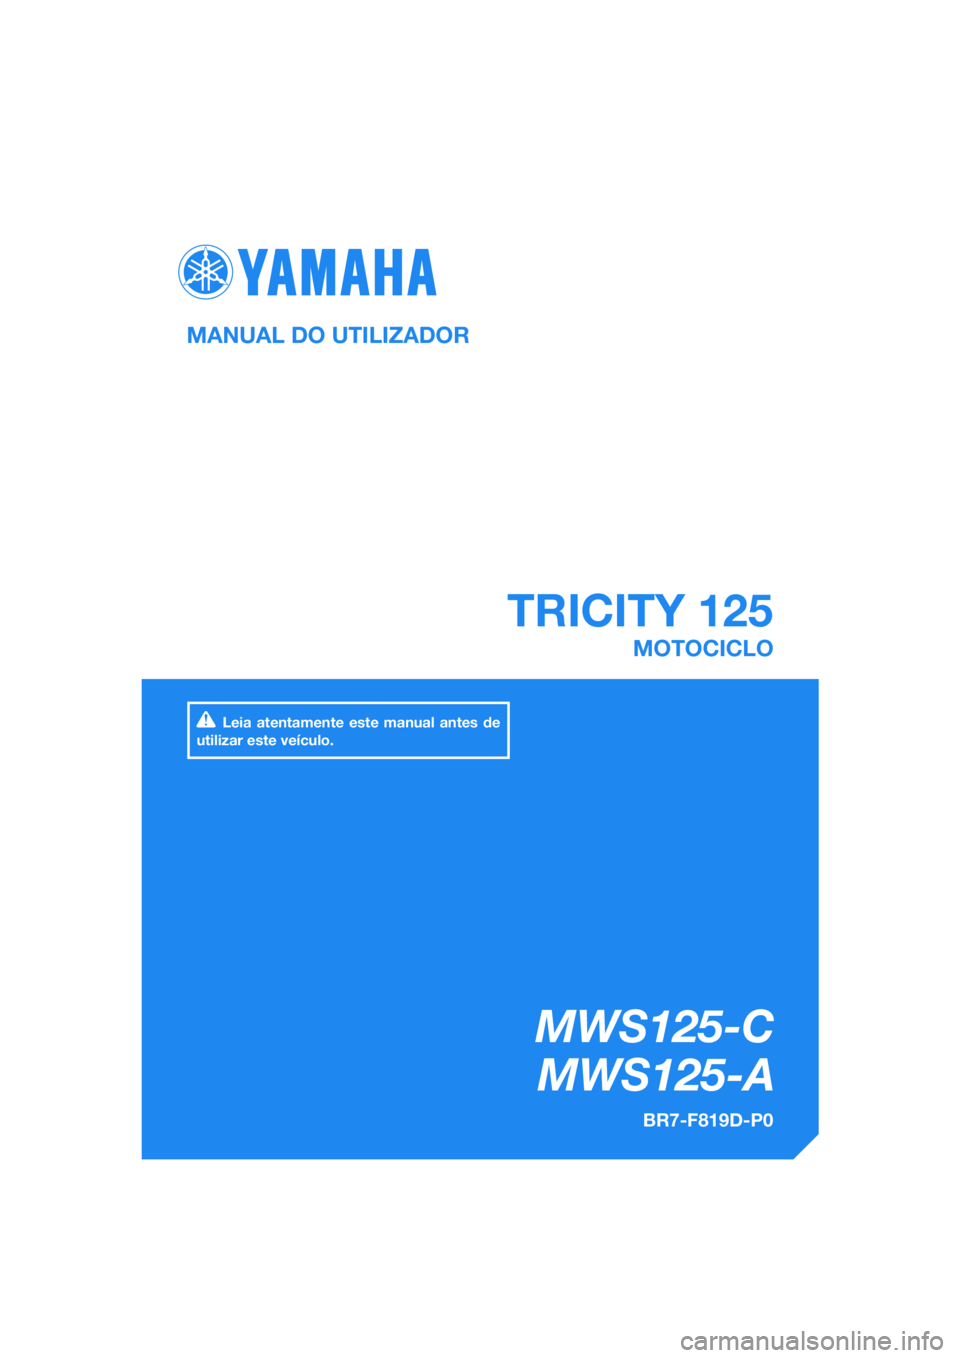 YAMAHA TRICITY 2017  Manual de utilização (in Portuguese) DIC183
 TRICITY 125
MWS125-C
   MWS125-A
MANUAL DO UTILIZADOR
BR7-F819D-P0
MOTOCICLO
Leia atentamente este manual antes de 
utilizar este veículo.
[Portuguese  (P)] 